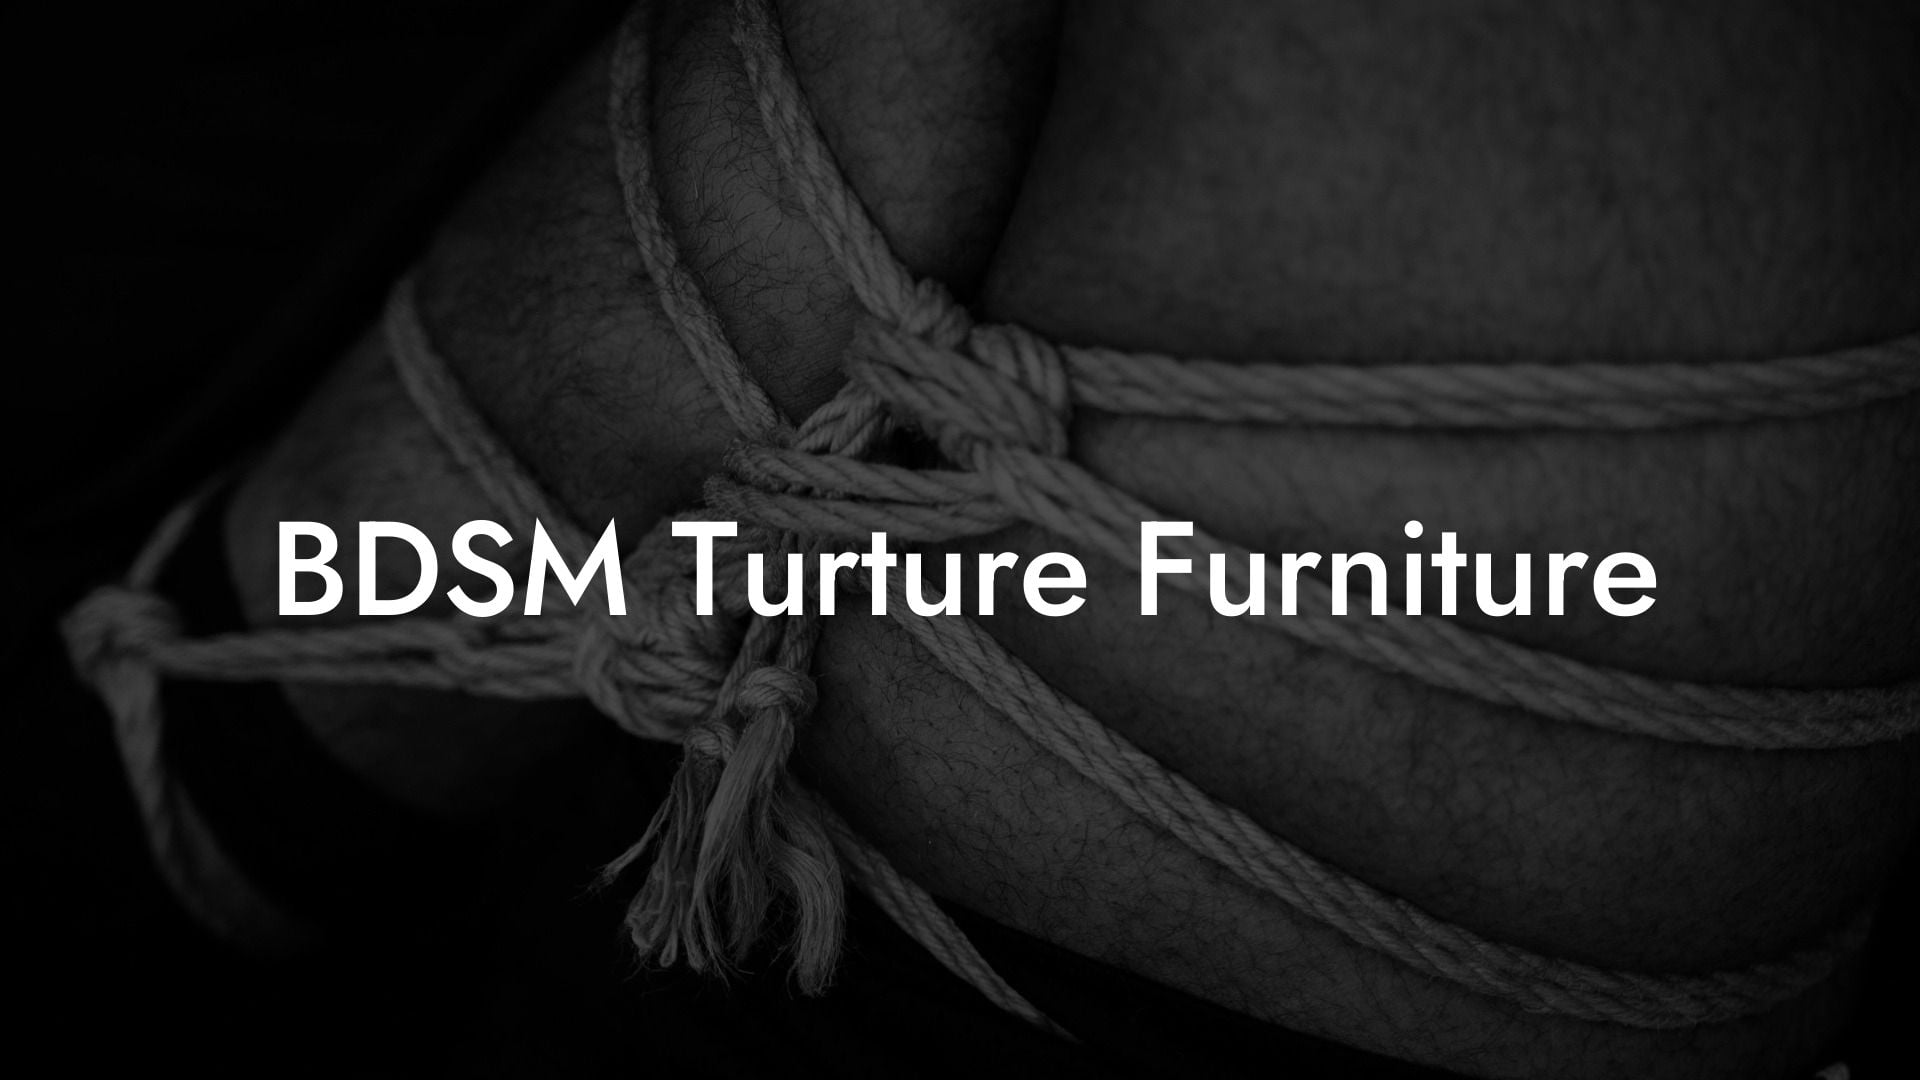 BDSM Turture Furniture